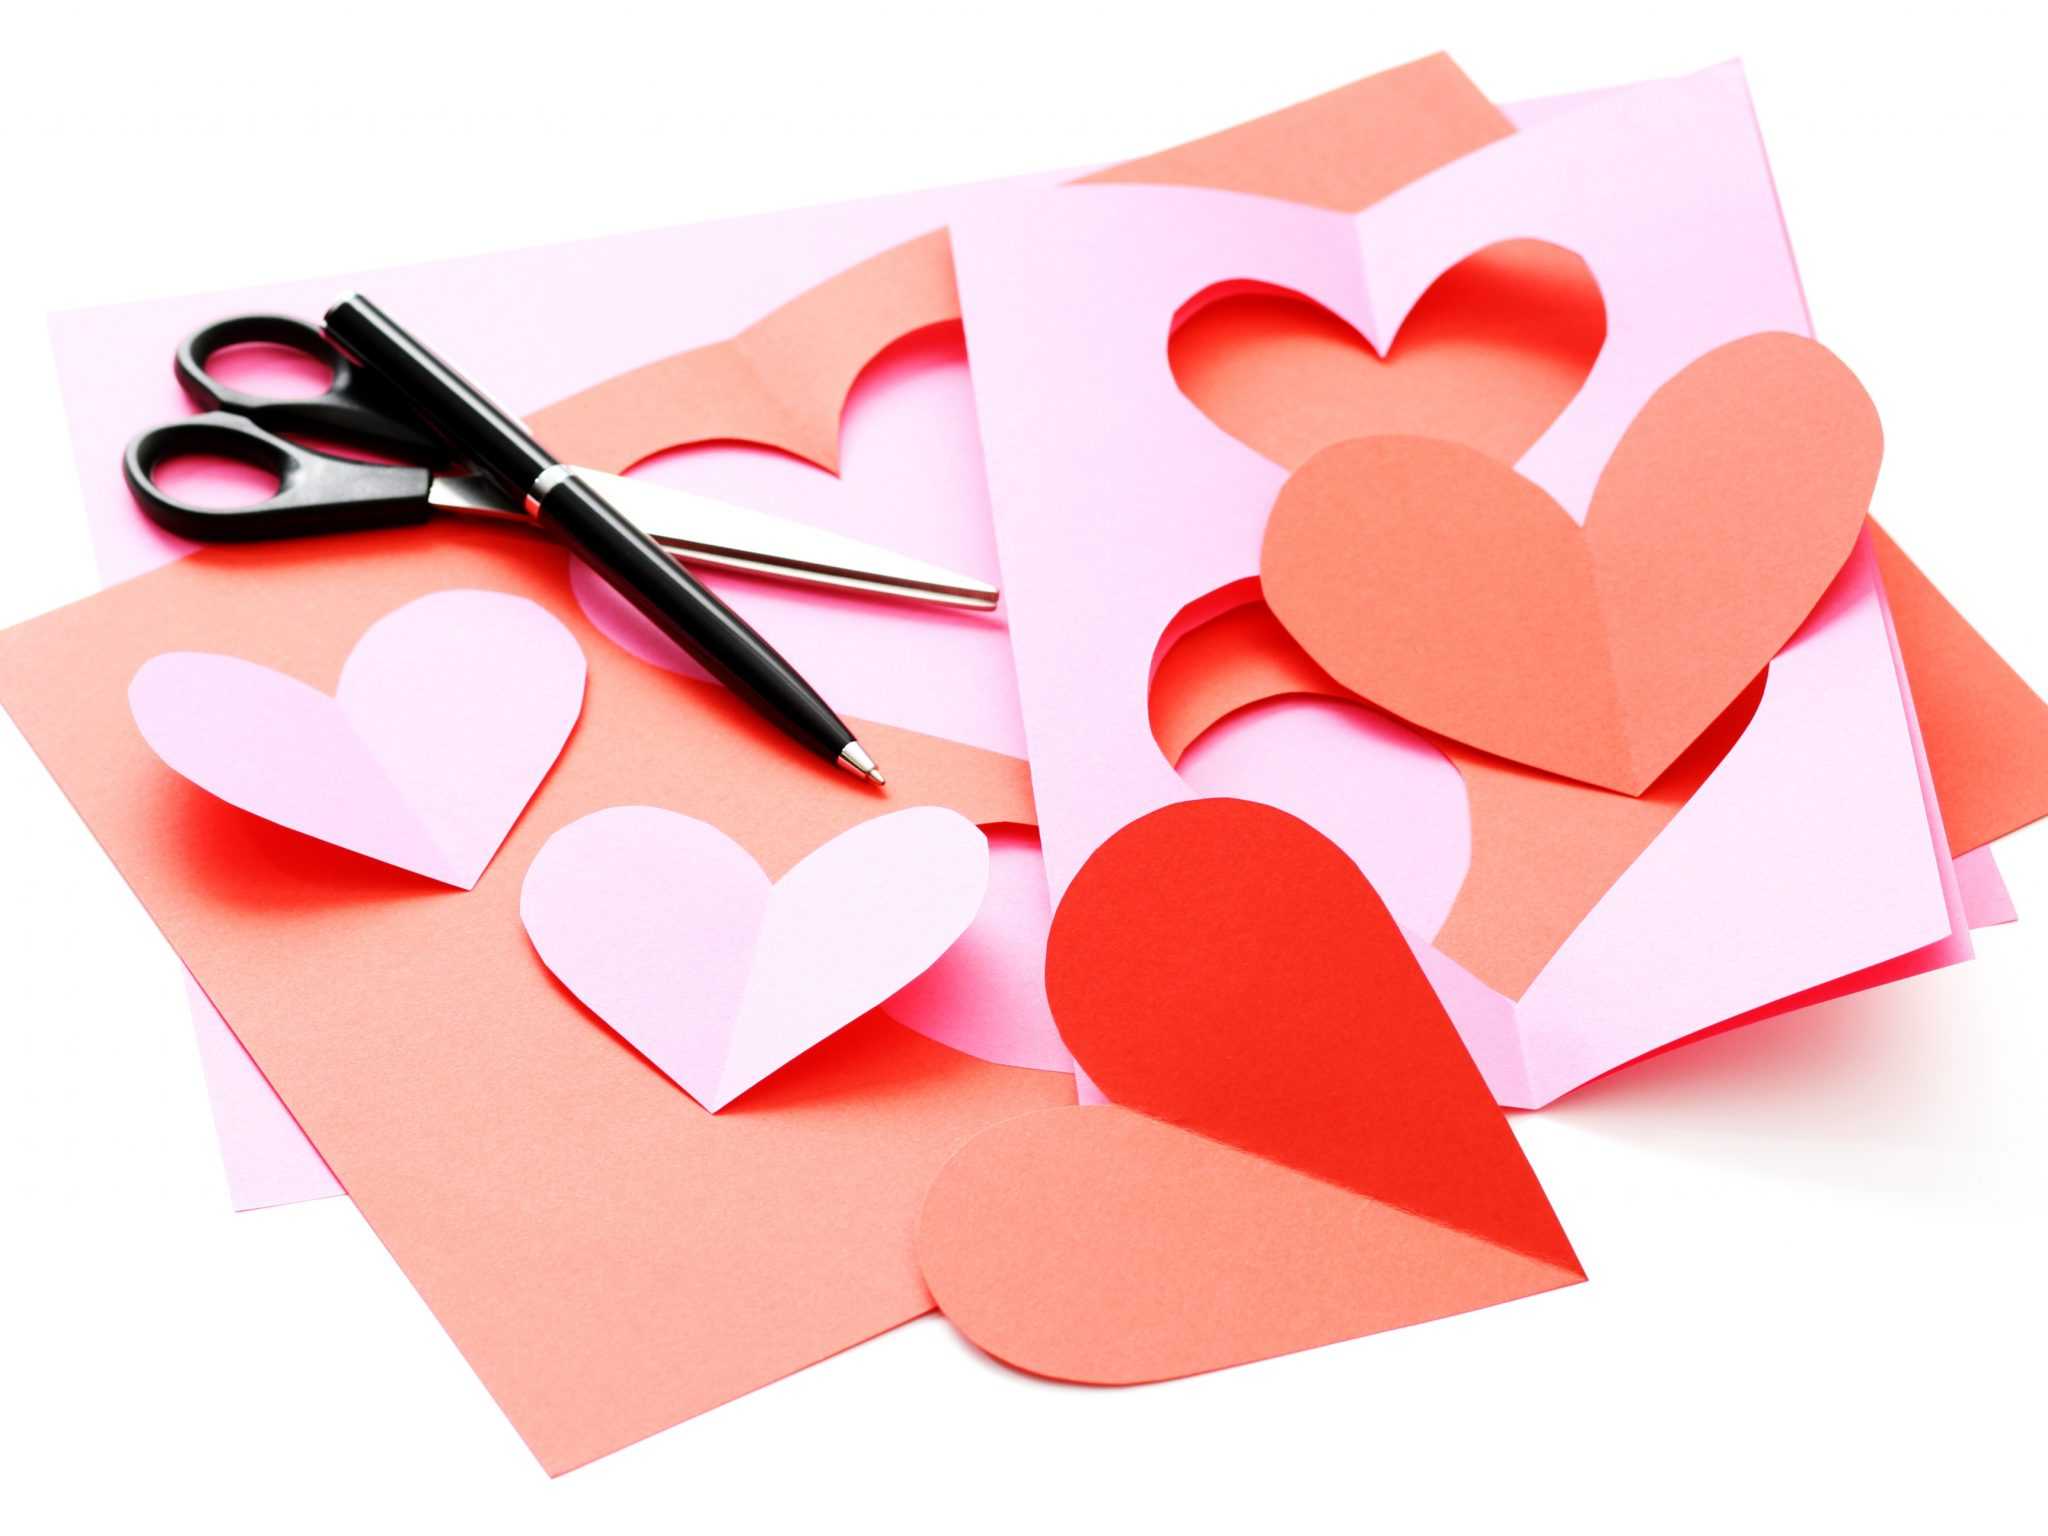 Как сделать сердечко - 101 новая фото идея самодельных сердечек из бумаги, бисера, оригами, теста, салфеток